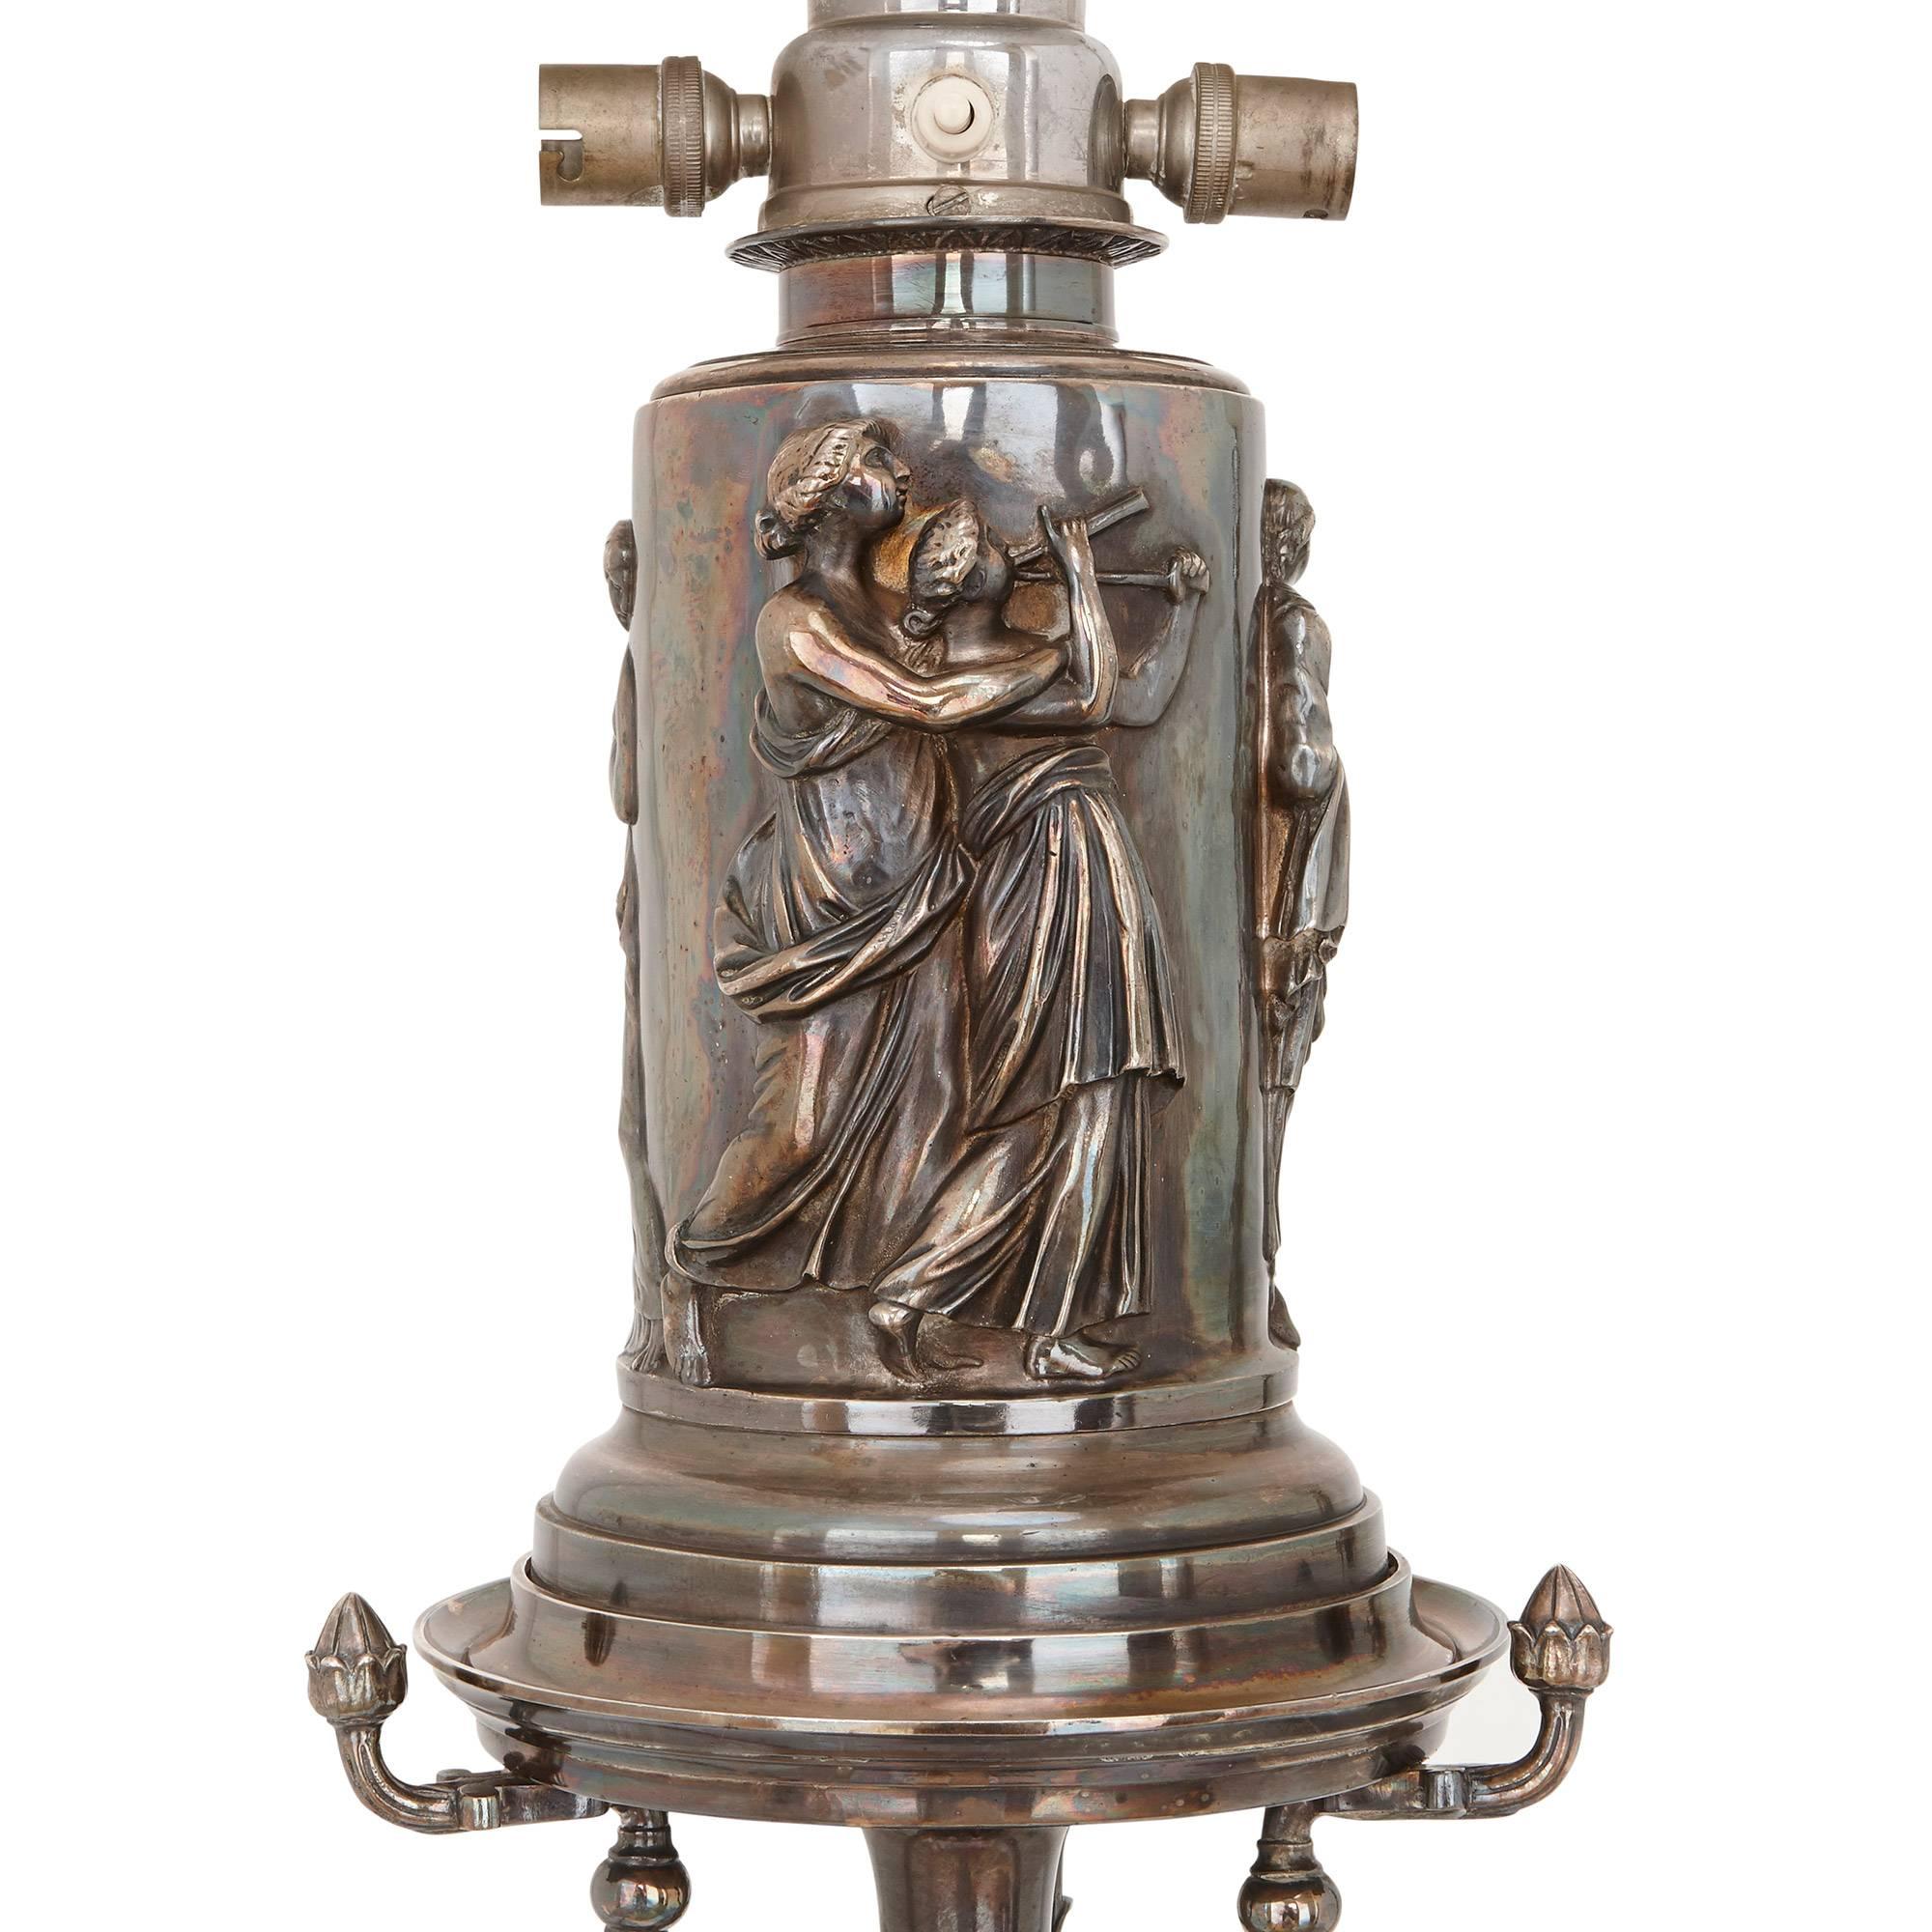 Diese schönen antiken französischen Stehlampen sind aus zarter versilberter Bronze gegossen und im raffinierten neoklassischen Stil verziert. Das Paar wäre eine atemberaubende Ergänzung für jedes luxuriöse Interieur. Jedes Paar hat einen mit